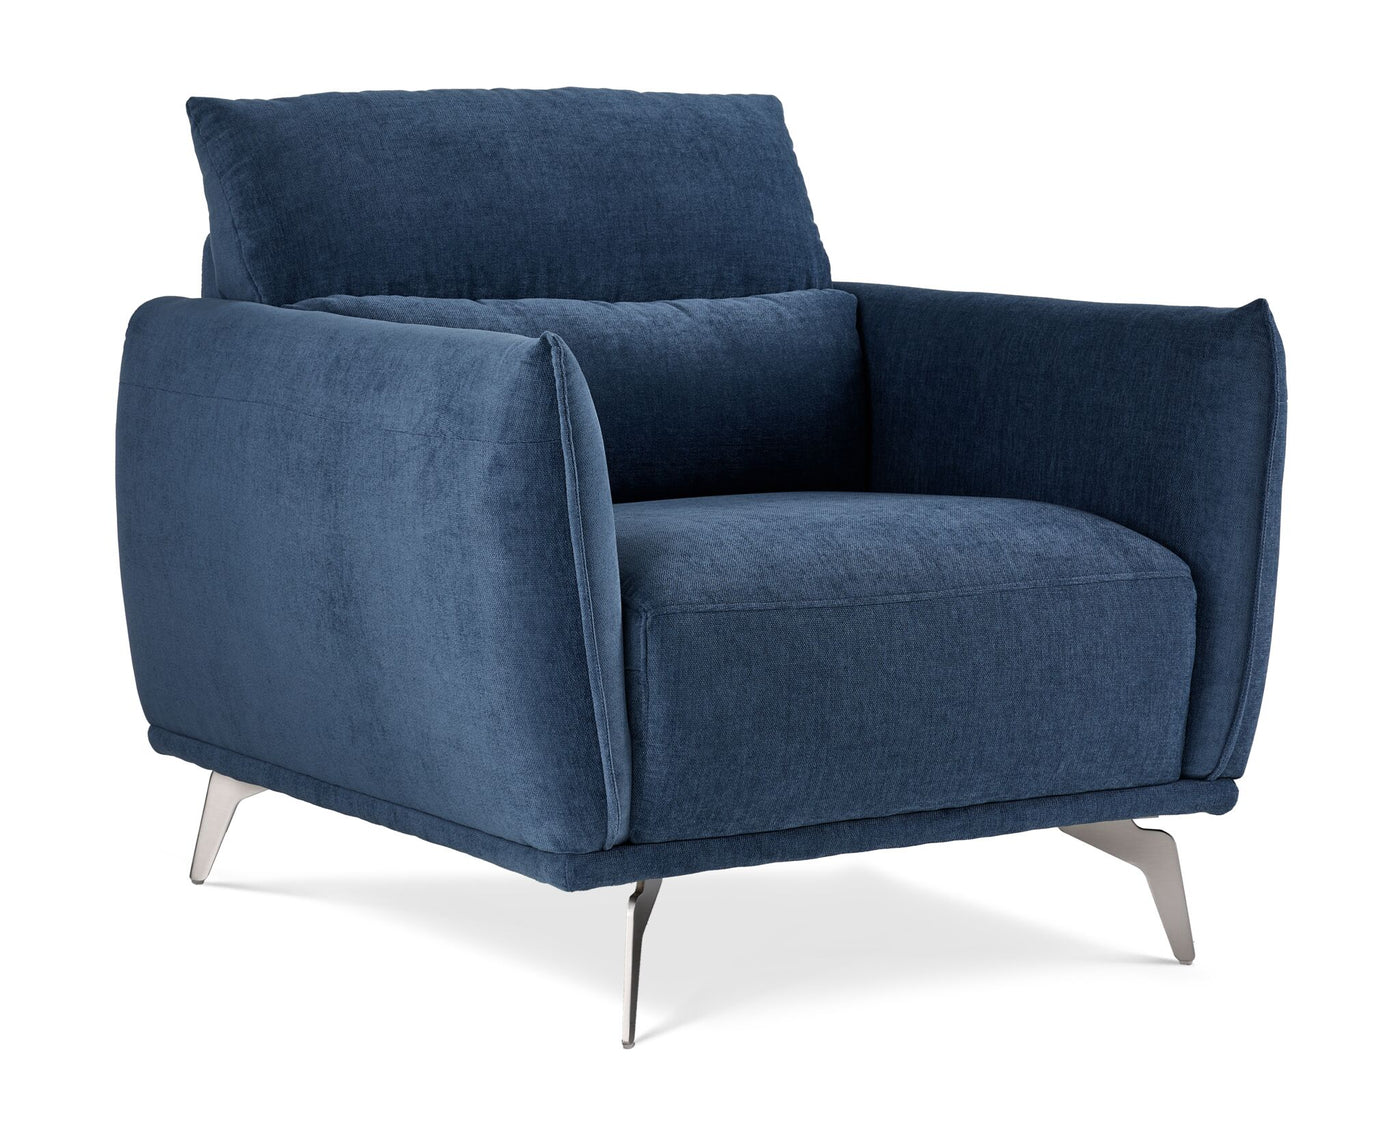 Arie Chair - Blue